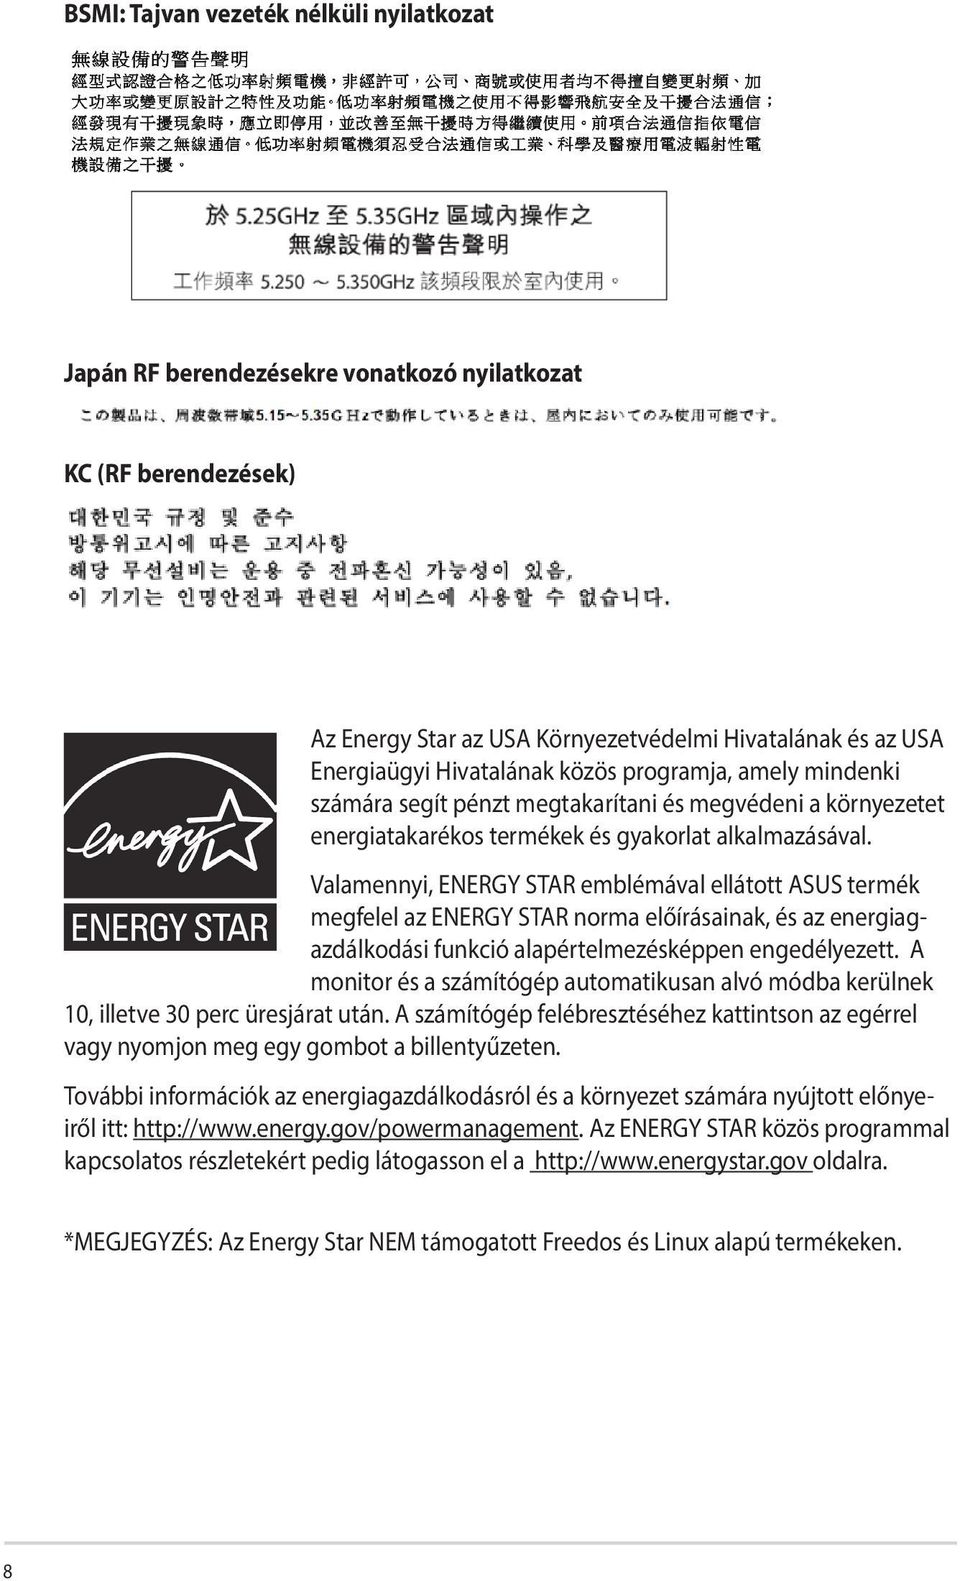 Valamennyi, ENERGY STAR emblémával ellátott ASUS termék megfelel az ENERGY STAR norma előírásainak, és az energiagazdálkodási funkció alapértelmezésképpen engedélyezett.